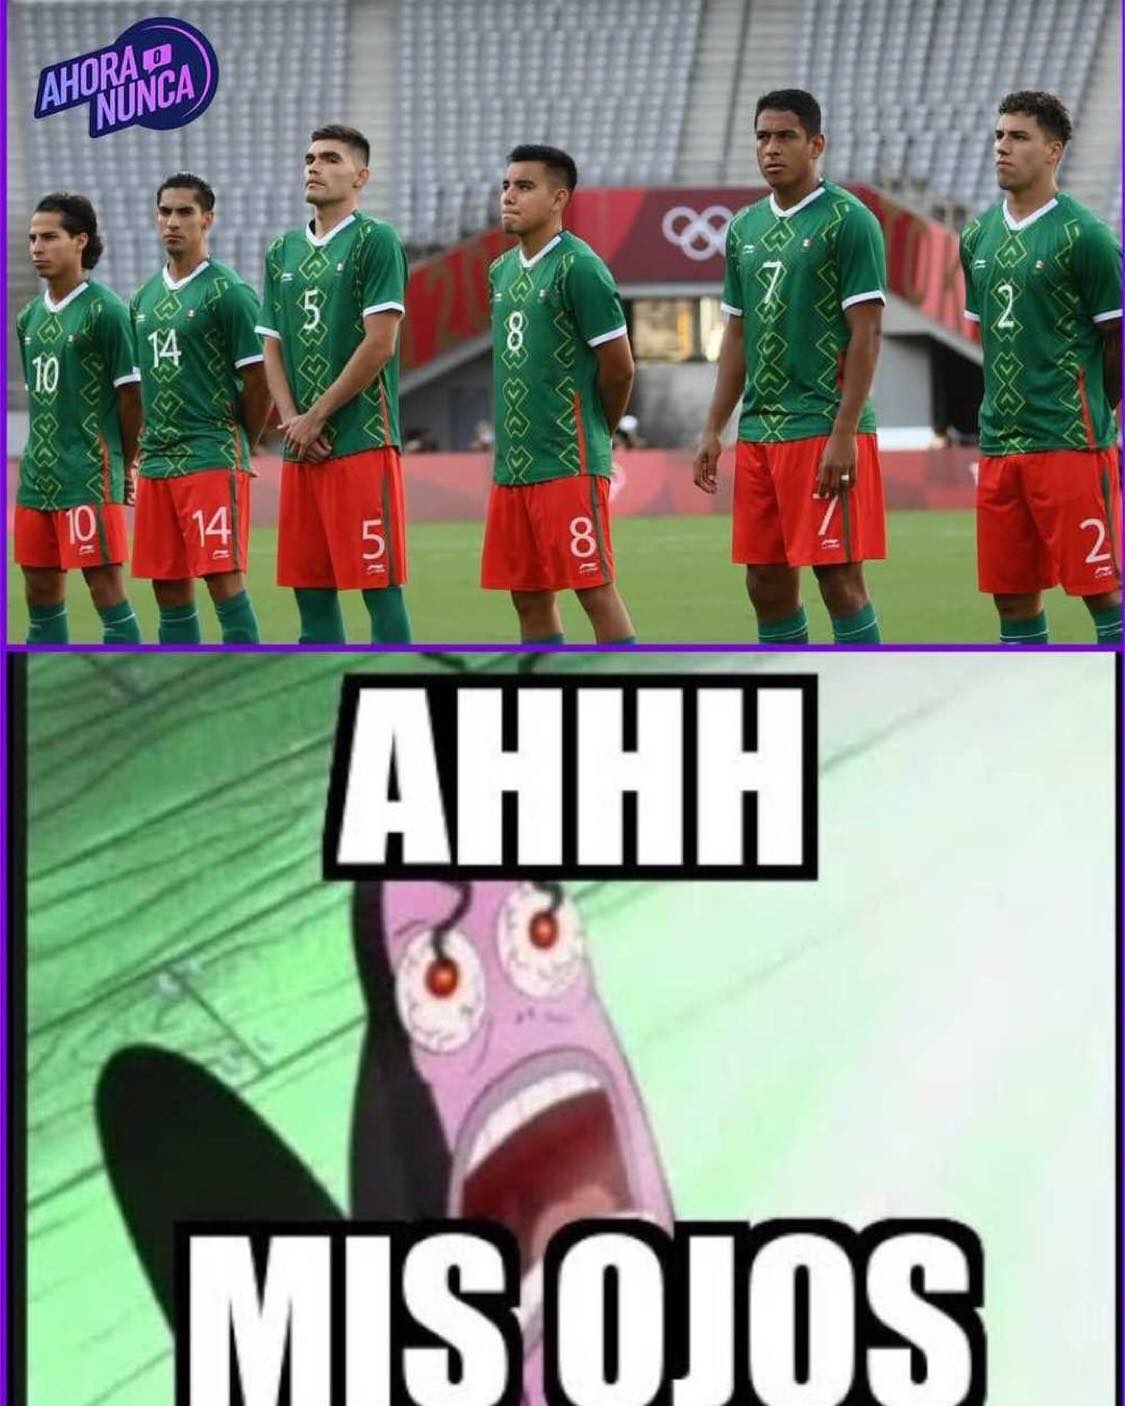 Memes del México vs Francia en Juegos Olímpicos